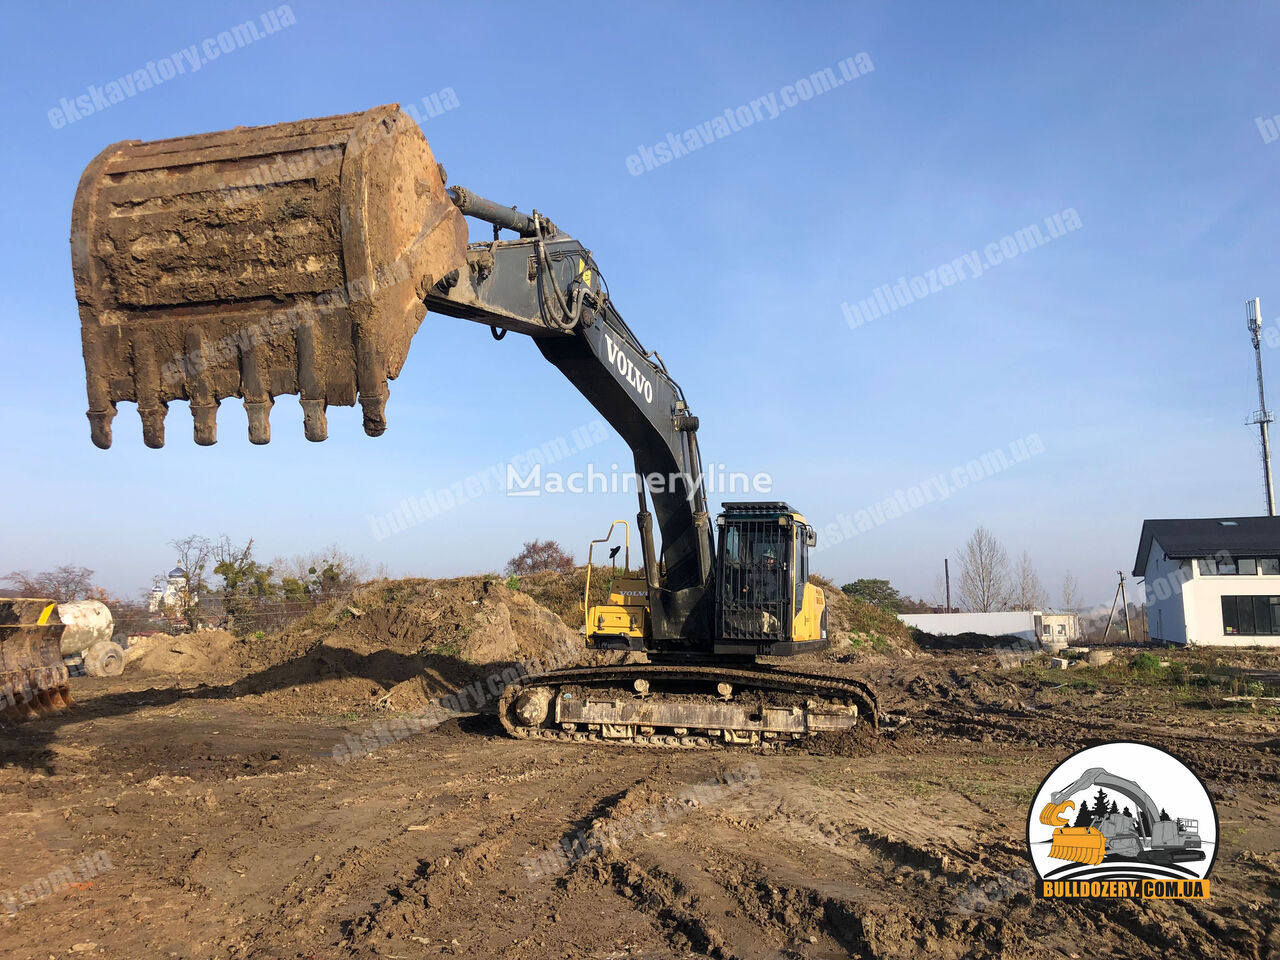 Volvo 290 tracked excavator